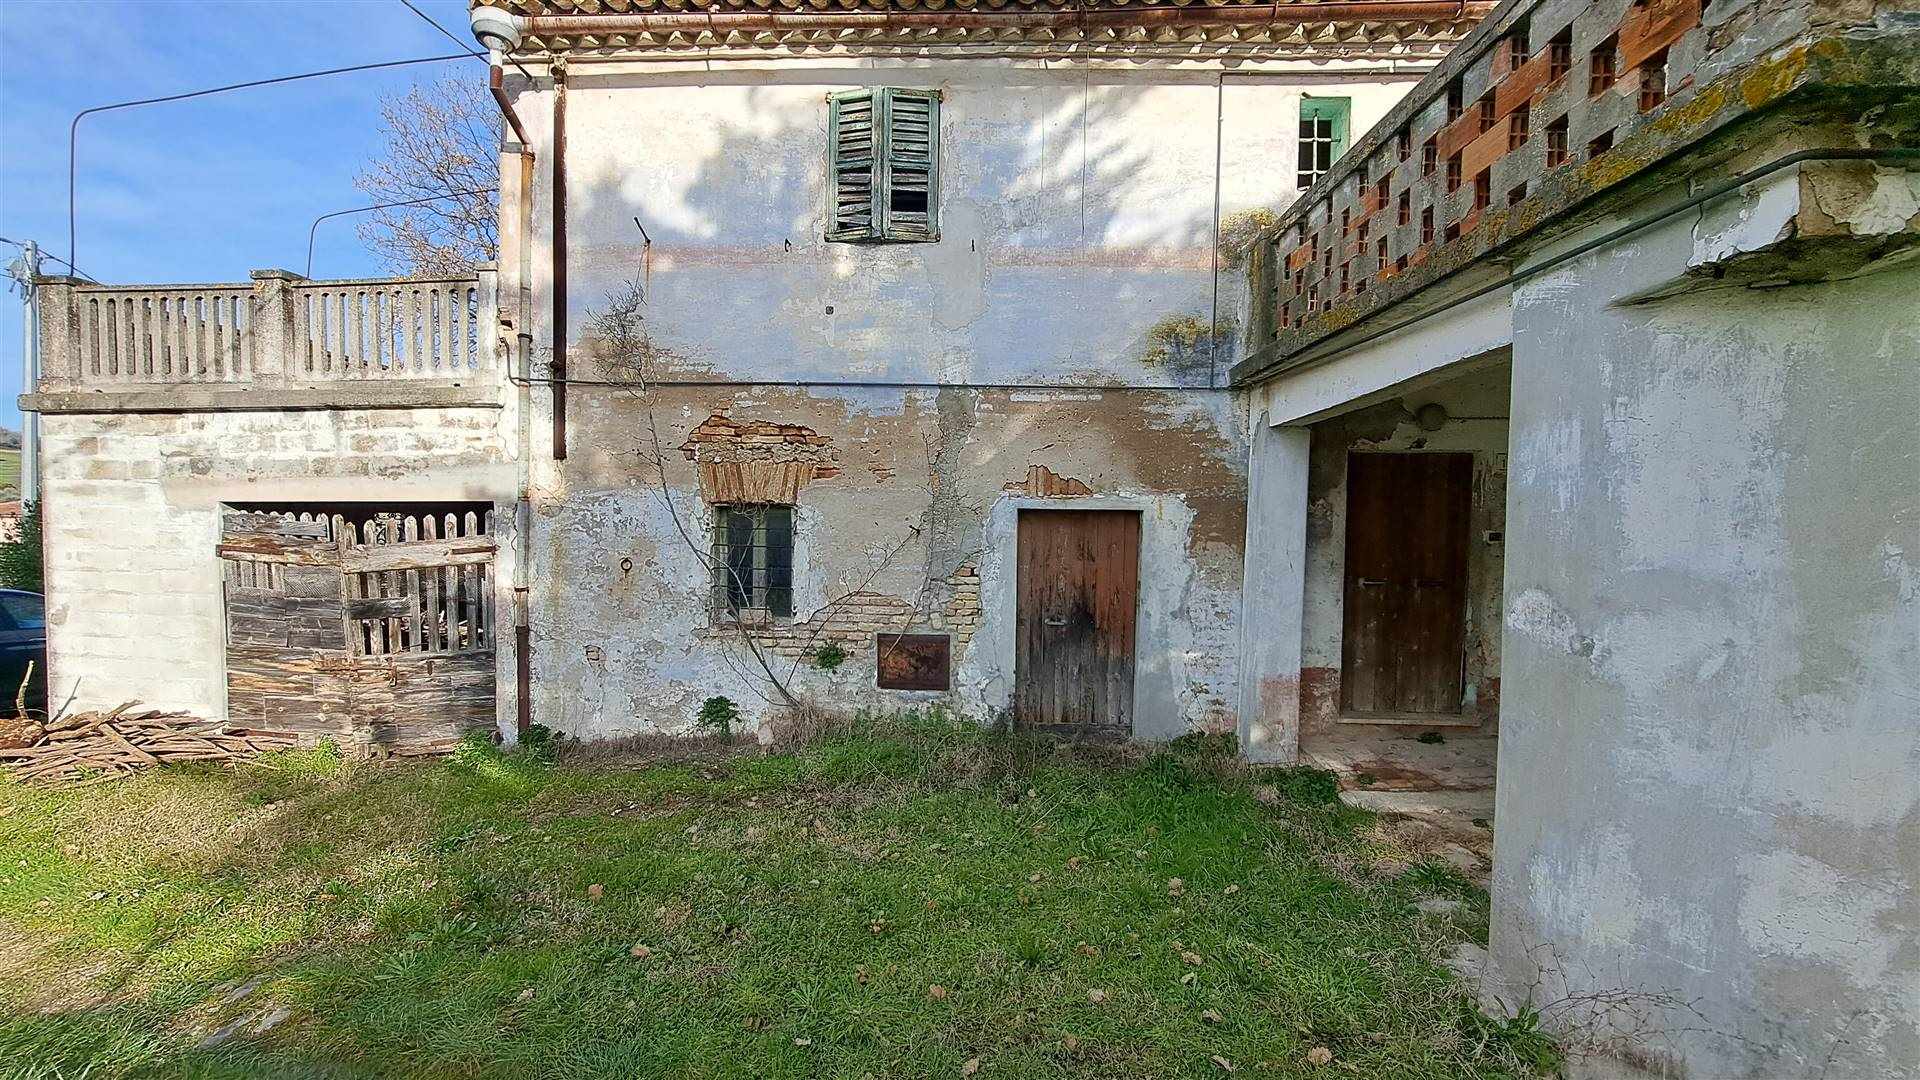 Rustico / Casale in vendita a Senigallia, 7 locali, zona 'Angelo, prezzo € 110.000 | PortaleAgenzieImmobiliari.it